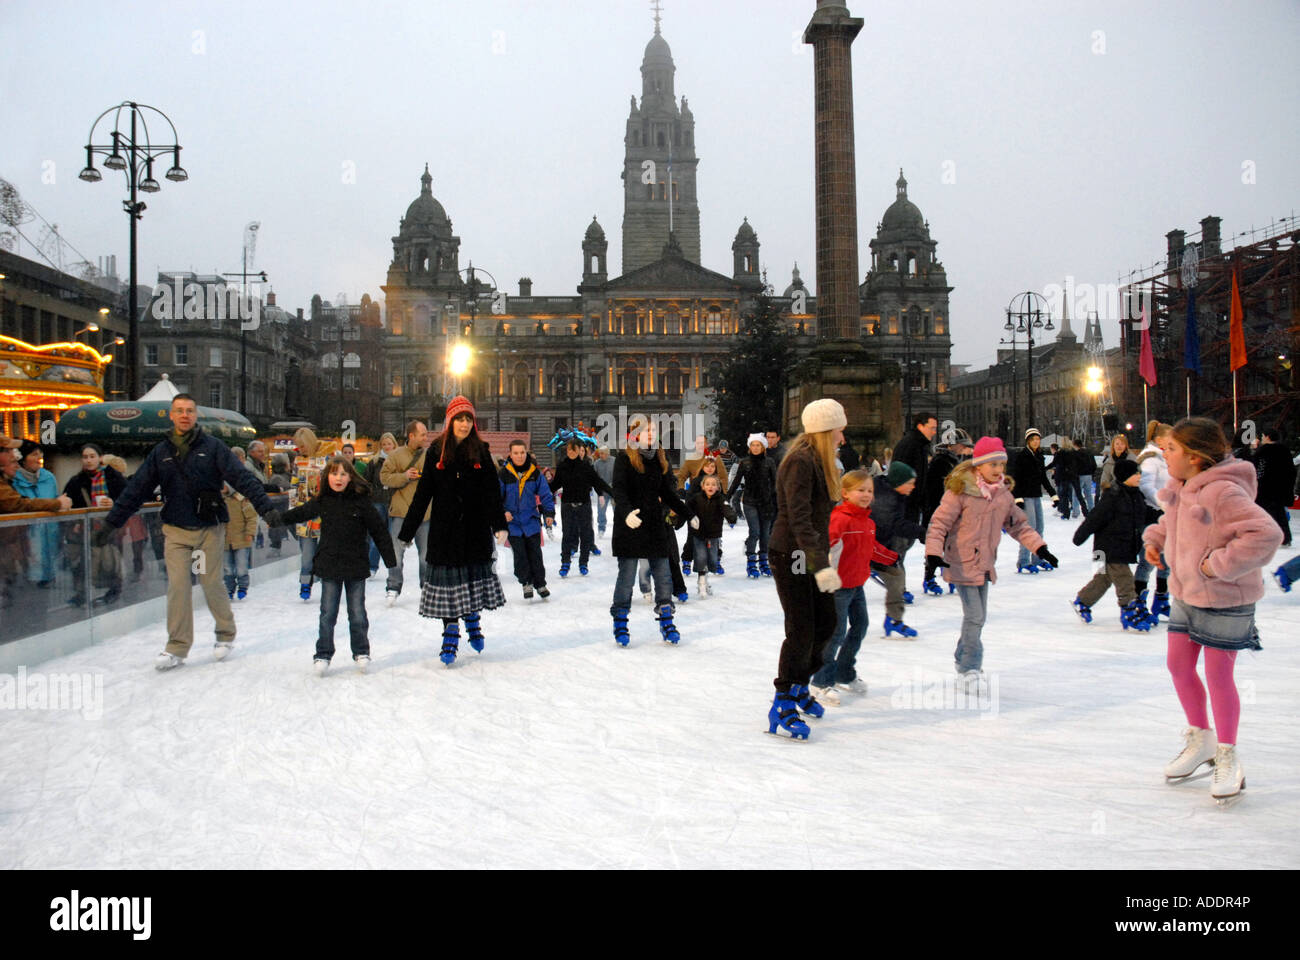 Patin à glace sur la patinoire de plein air, George Square. Les chambres de la ville en arrière-plan. Glasgow. L'Écosse. Xmas 2006 Banque D'Images